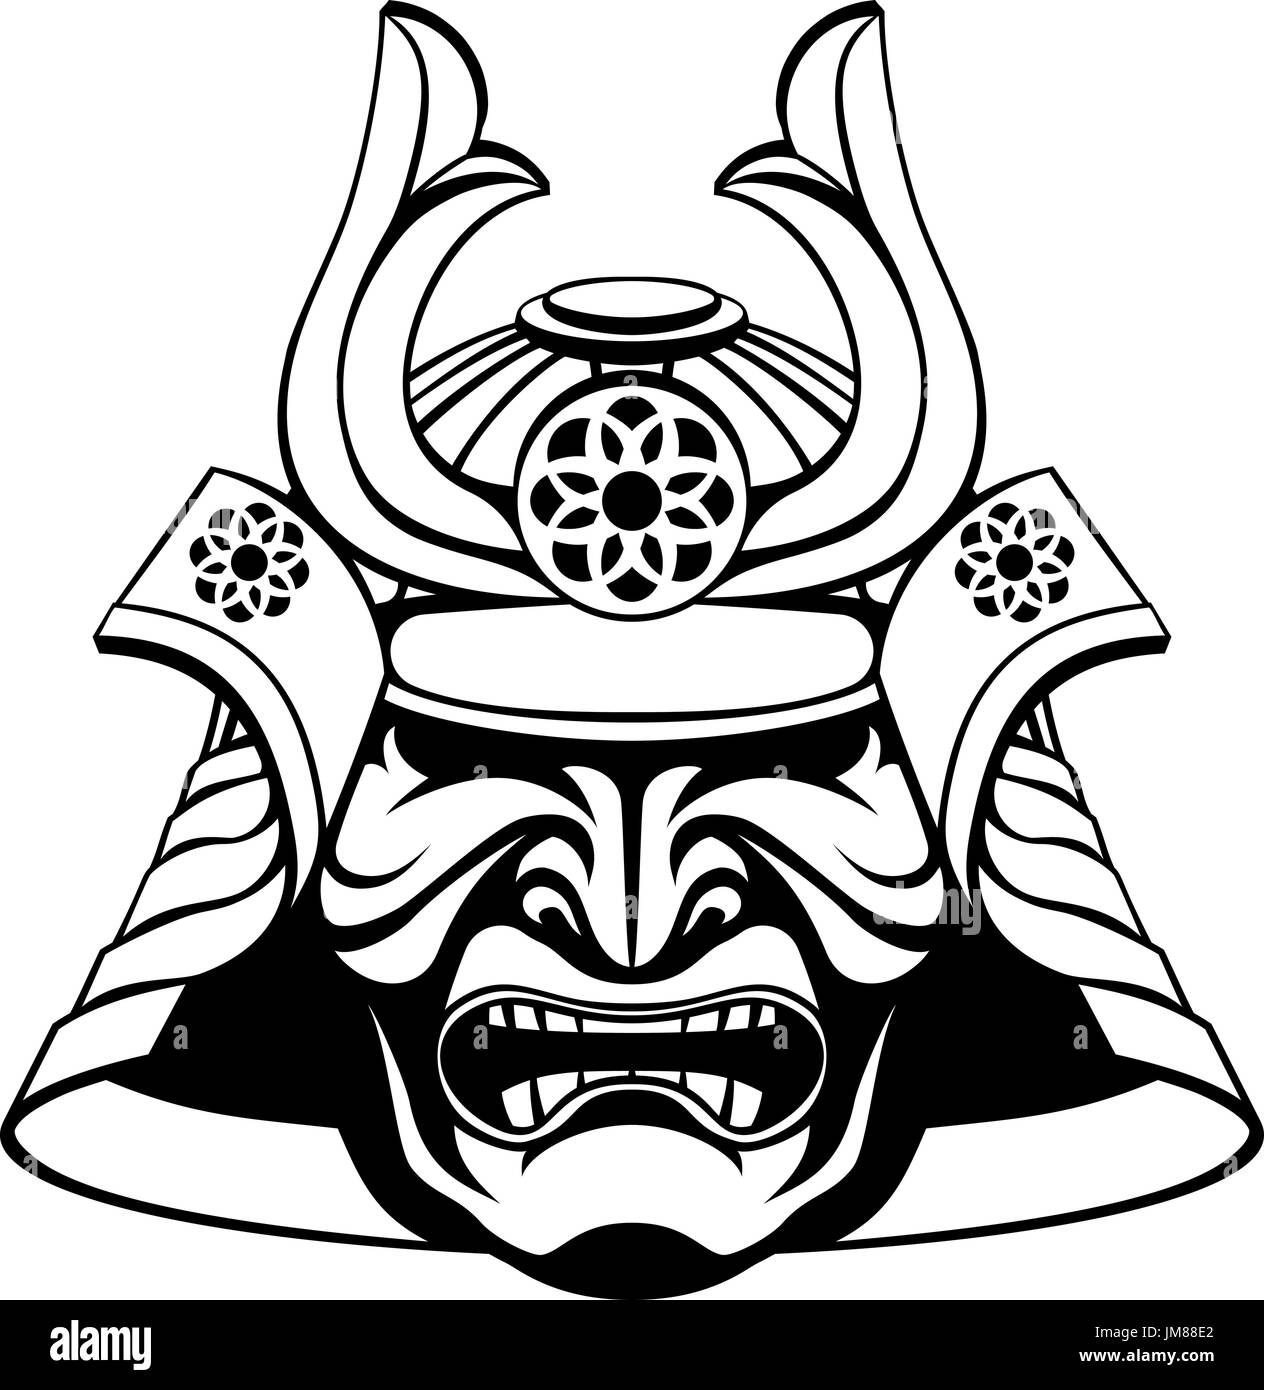 https://c8.alamy.com/compit/jm88e2/stilizzato-maschera-samurai-jm88e2.jpg